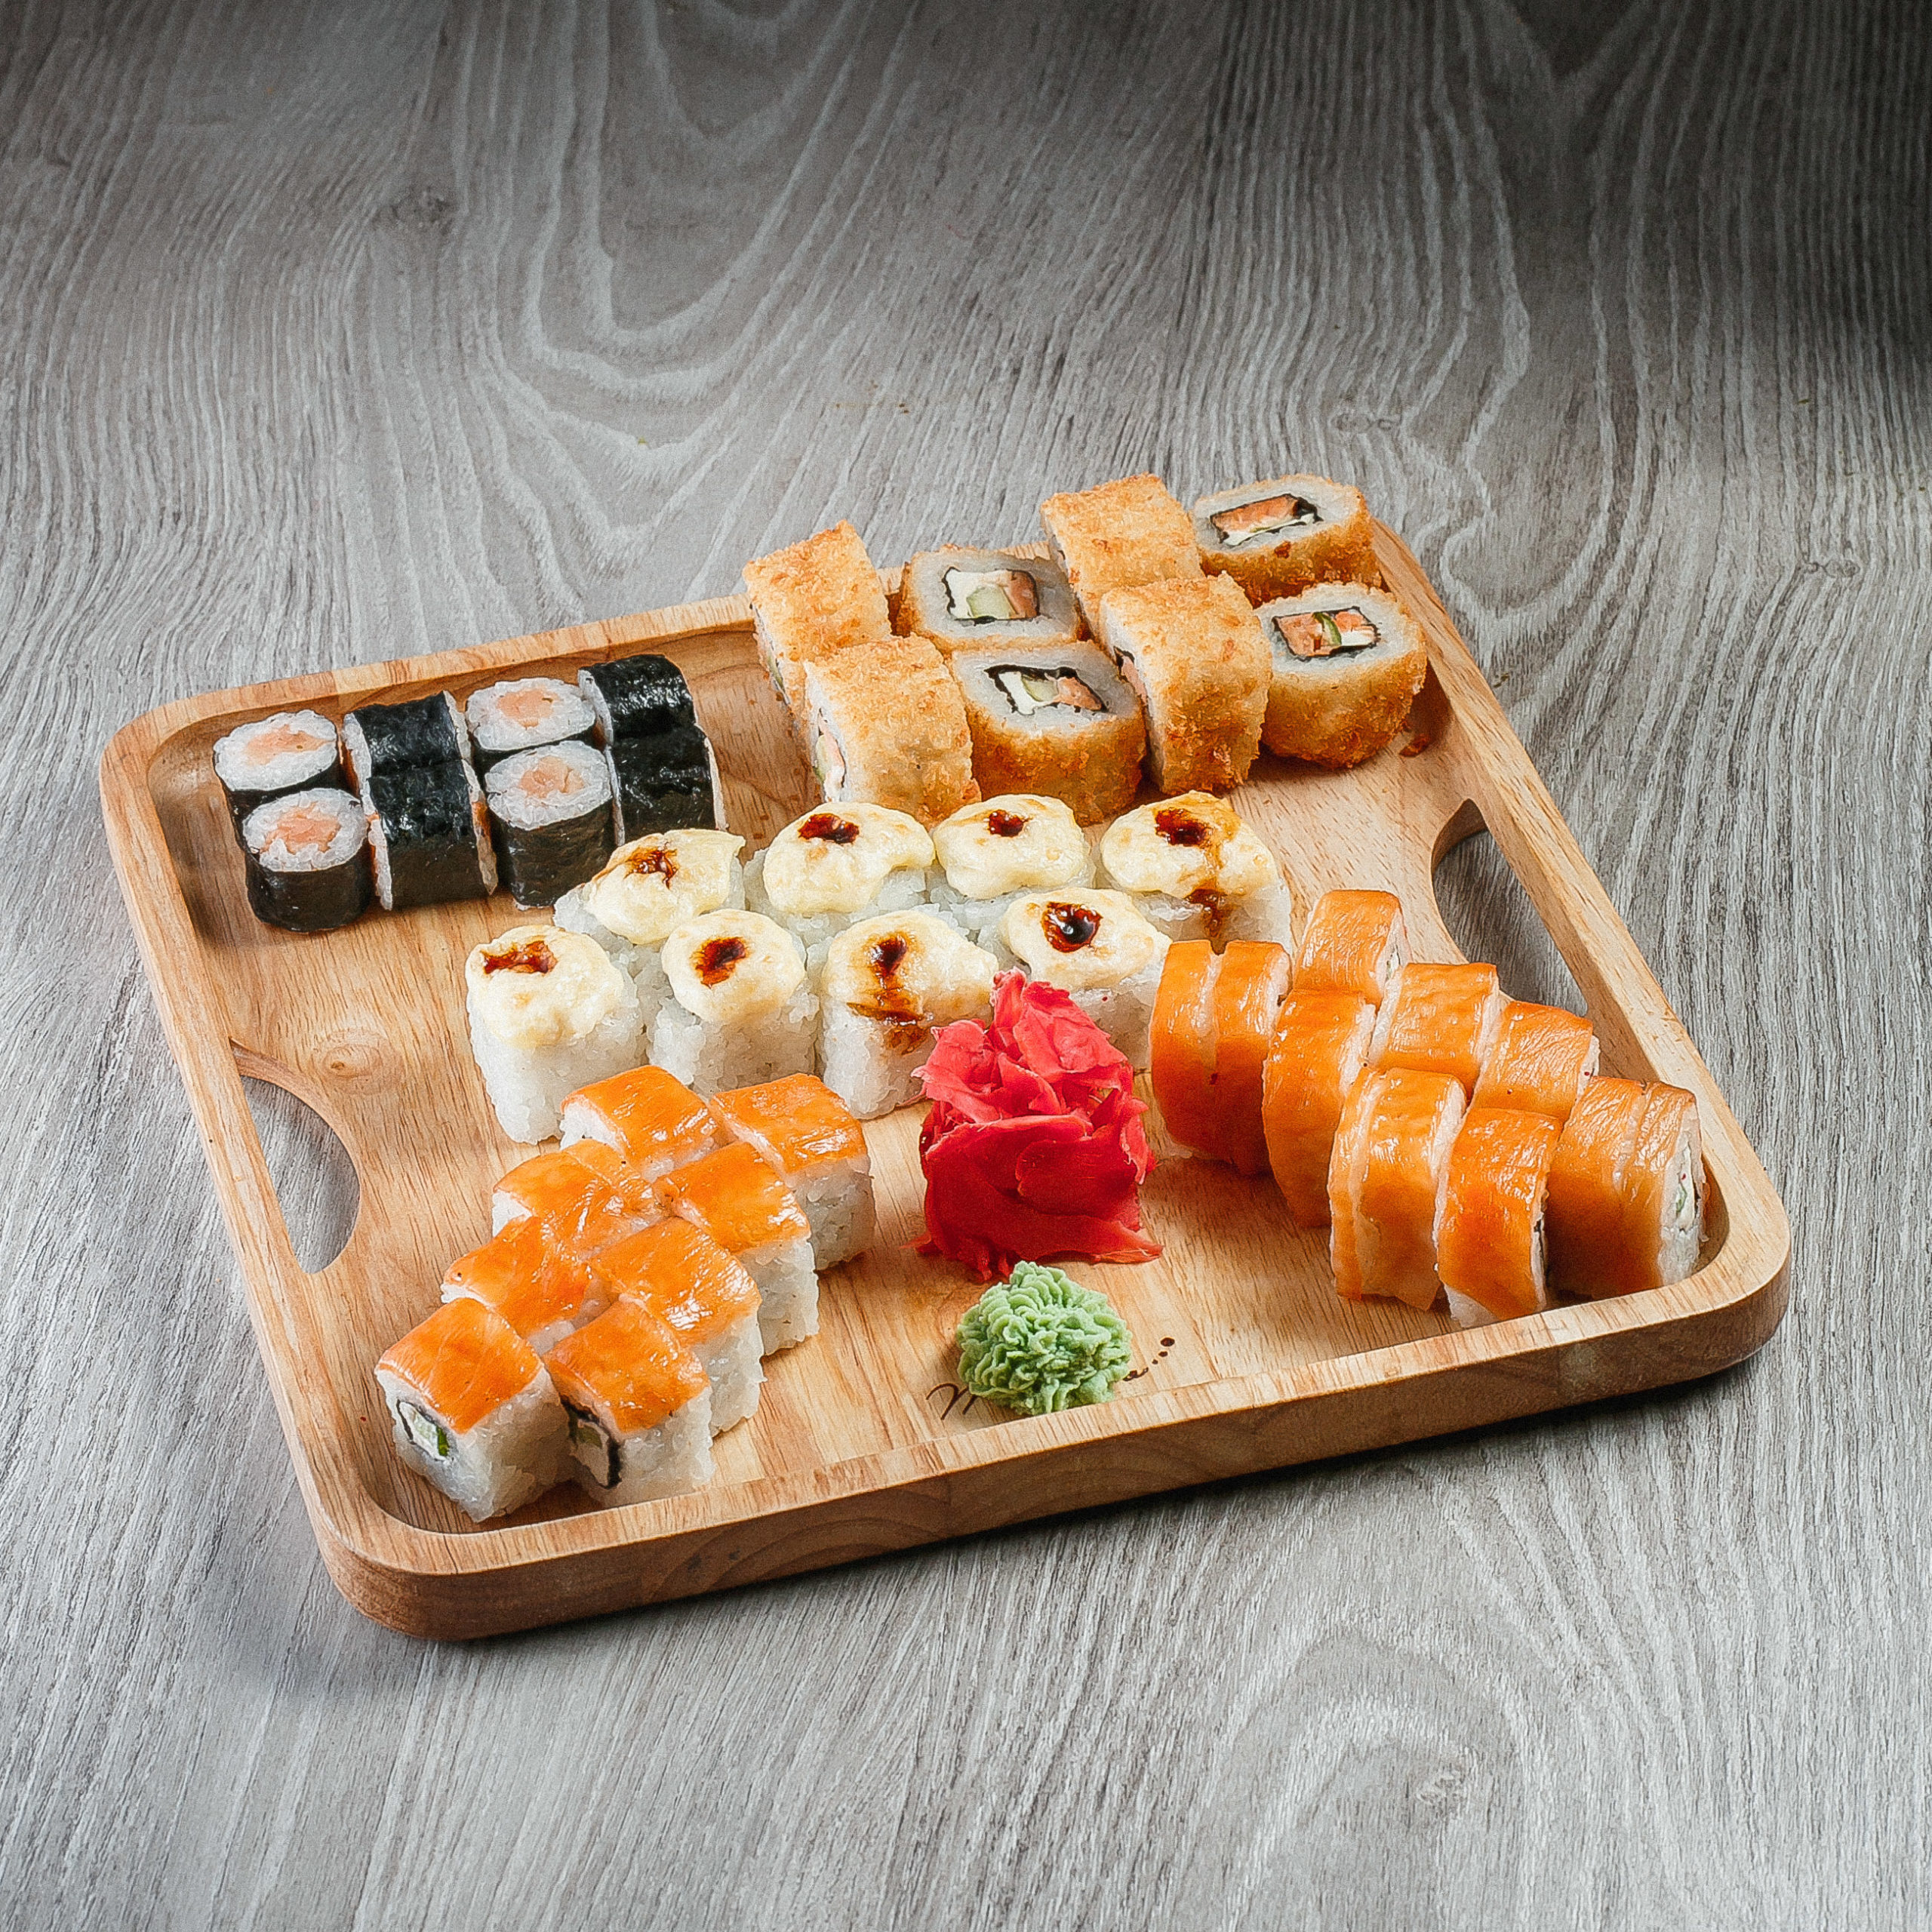 Заказать набор суши с доставкой в спб фото 69